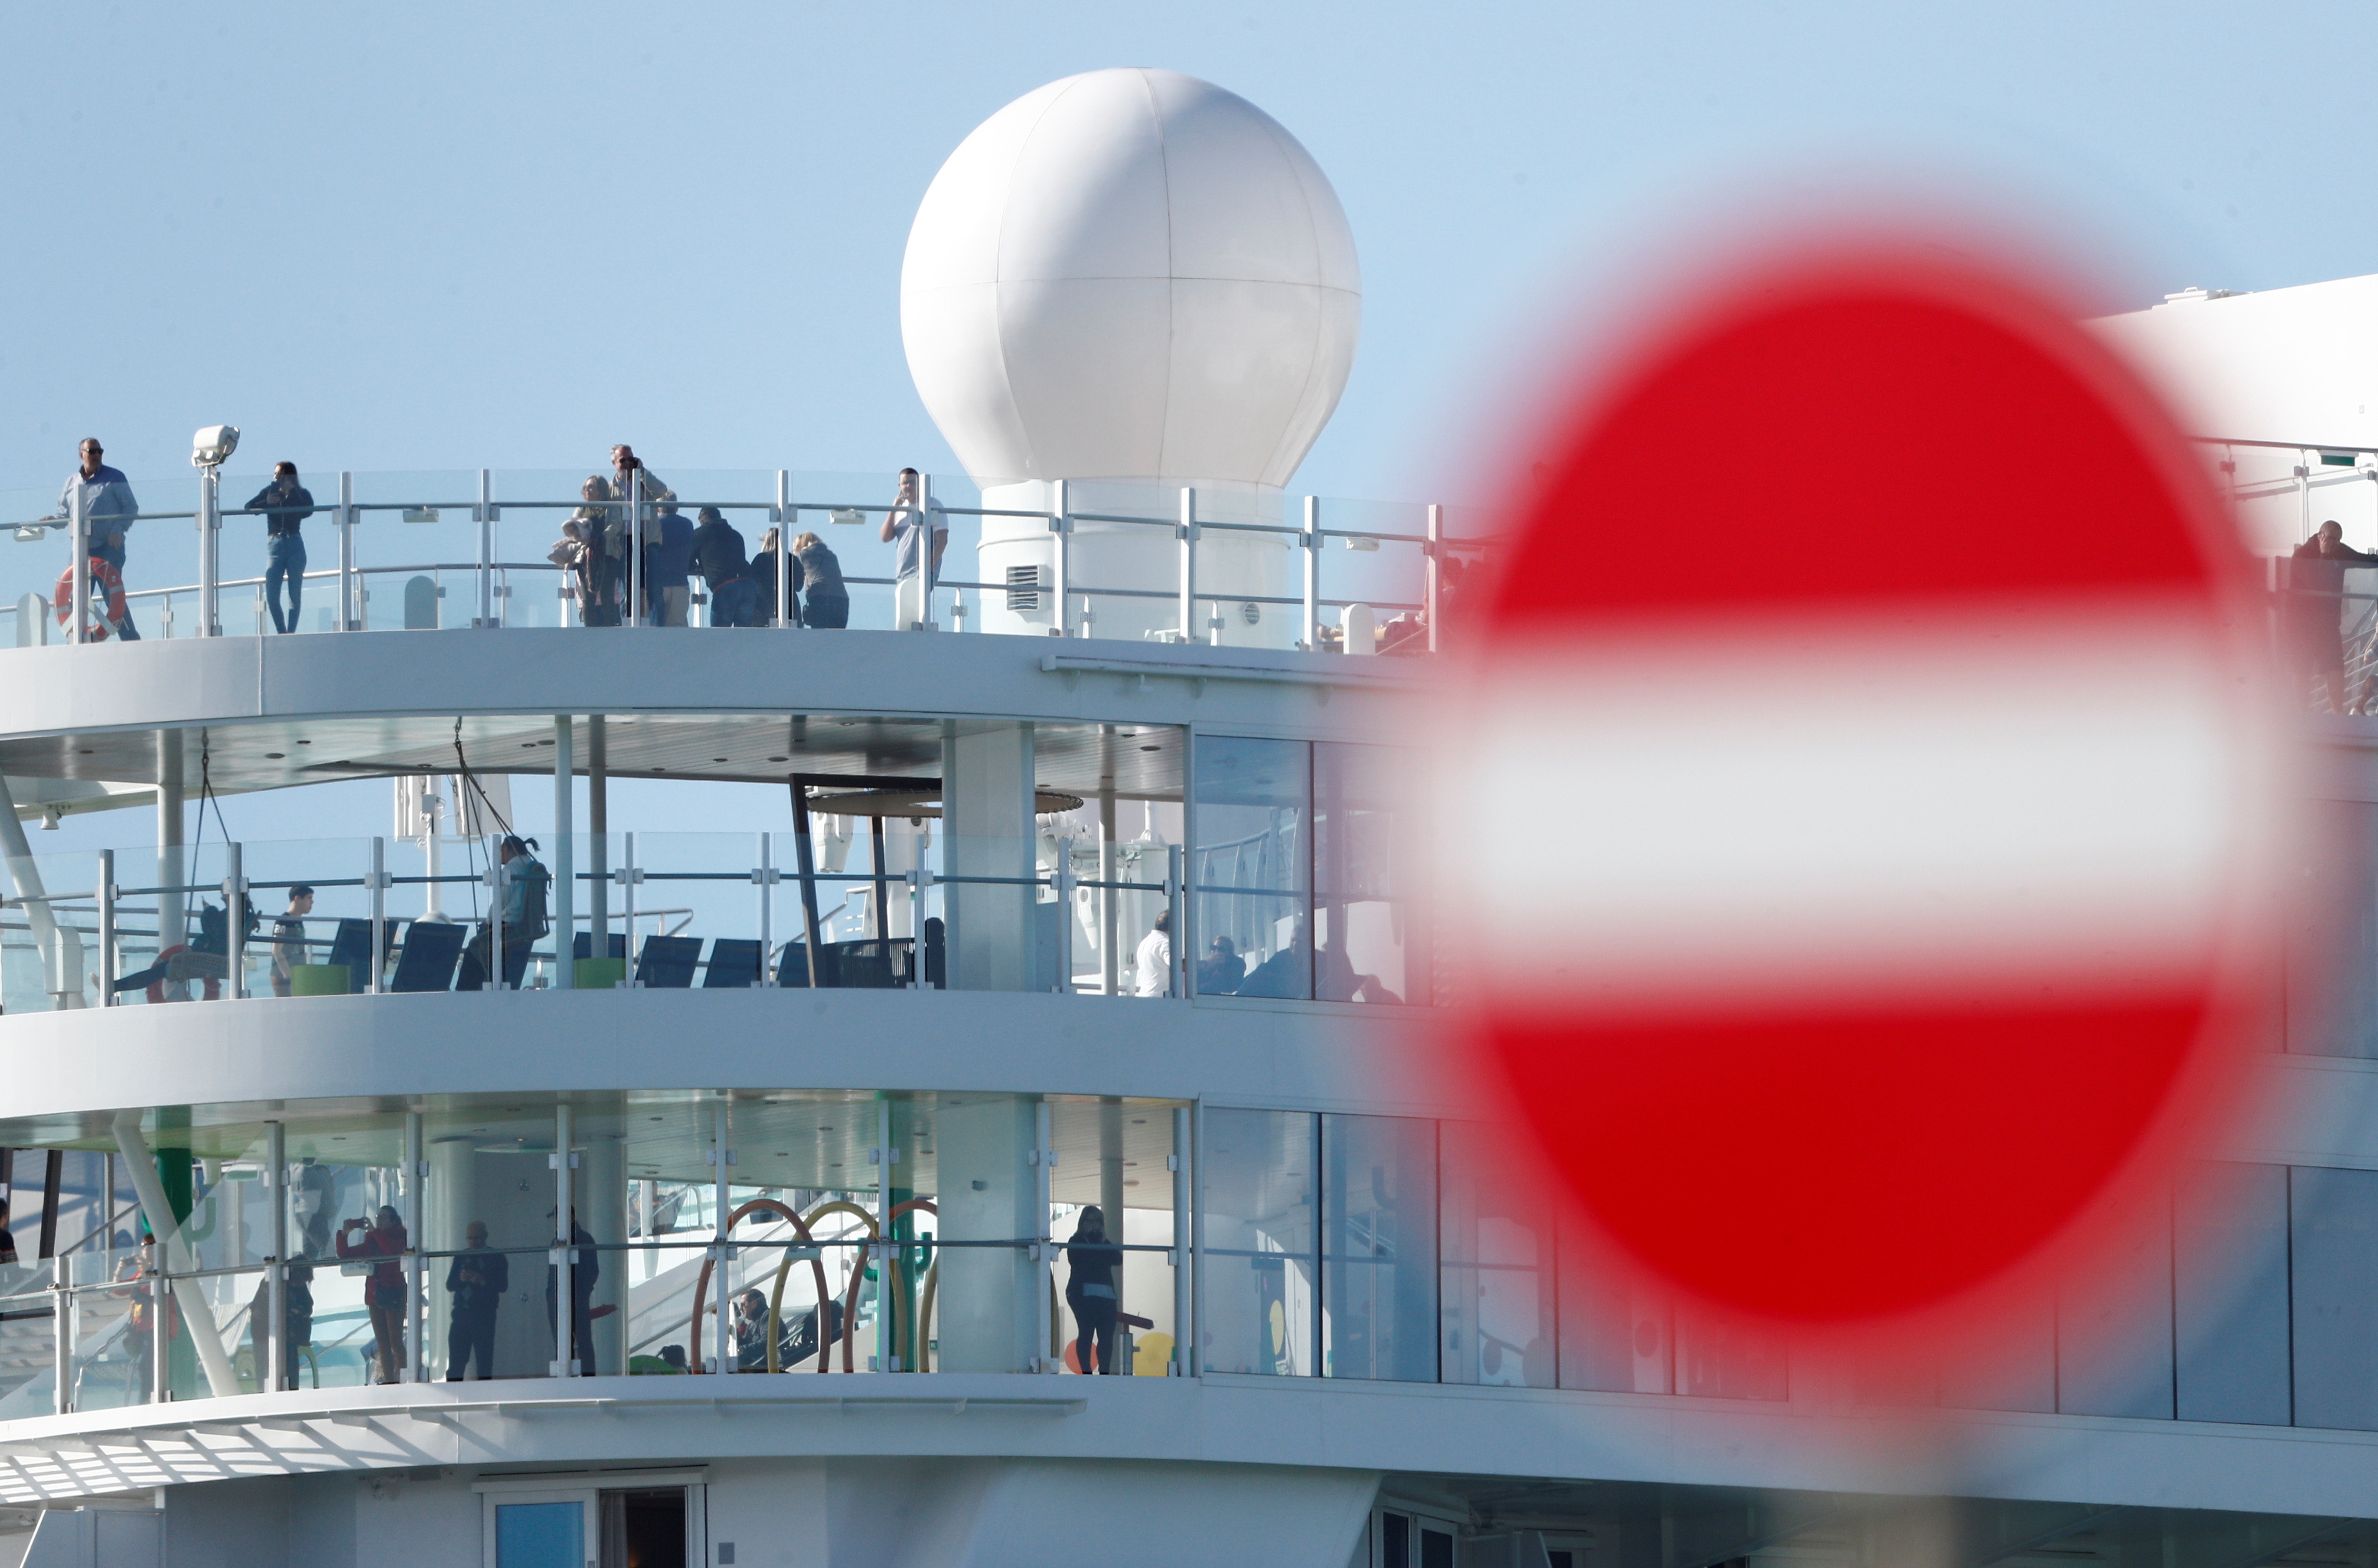 “Puede volverse una pesadilla”: Las FOTOS a bordo del crucero bloqueado por coronavirus